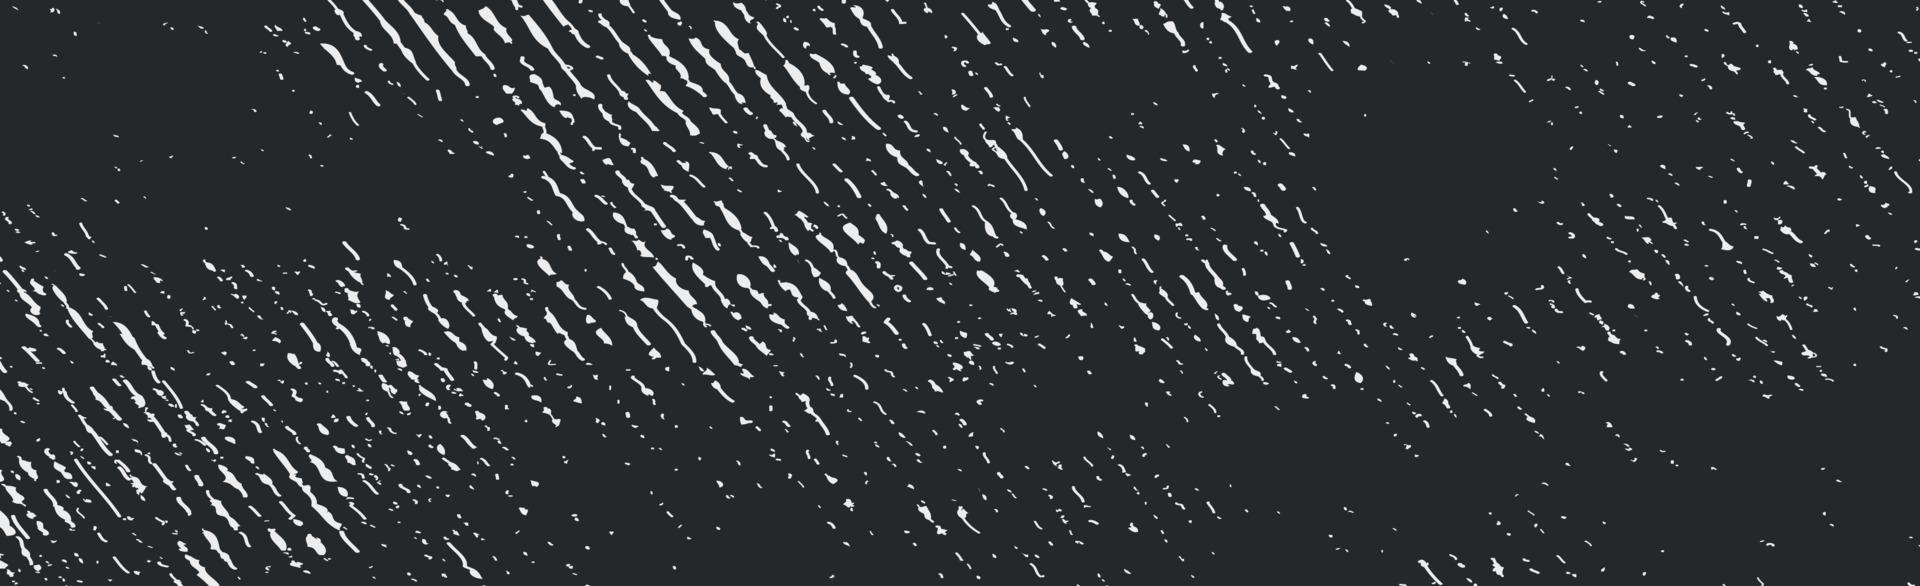 grunge vita linjer och prickar på en svart bakgrund - vektorillustration vektor